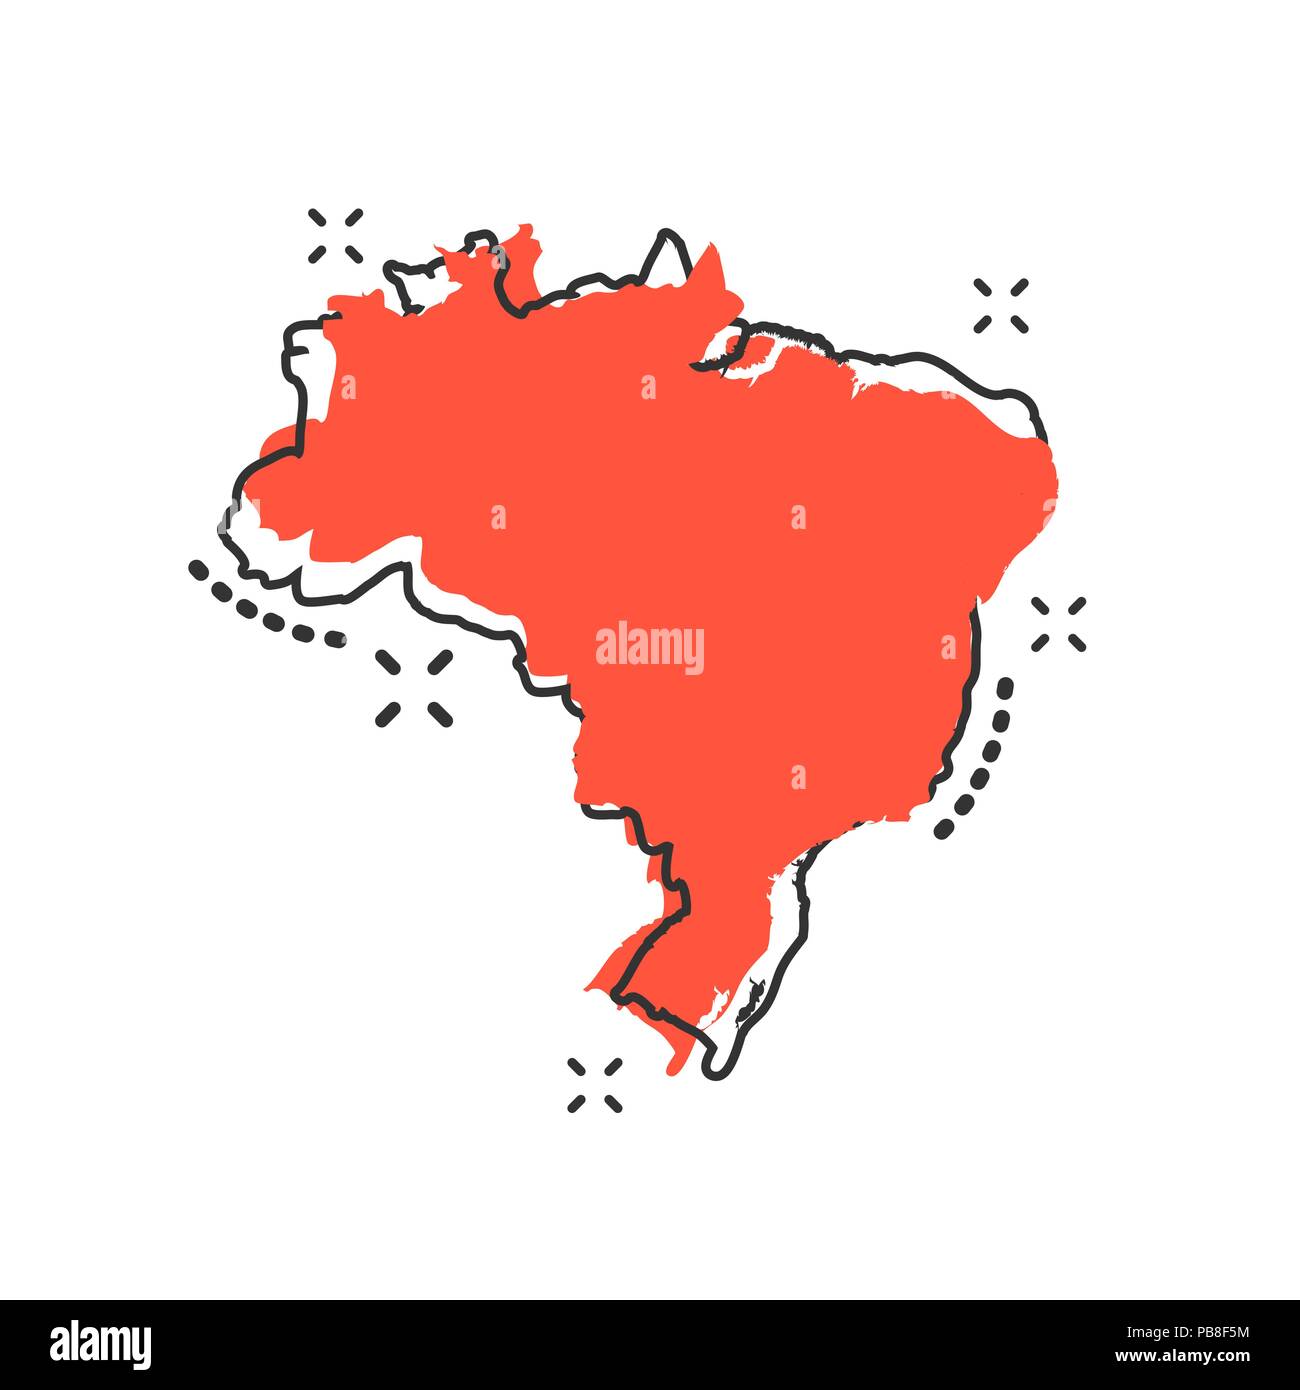 Vektor cartoon Brasilien Karte Symbol im Comic-stil. Brasilien unterzeichnen Abbildung Piktogramm. Kartographie Karte business splash Wirkung Konzept. Stock Vektor